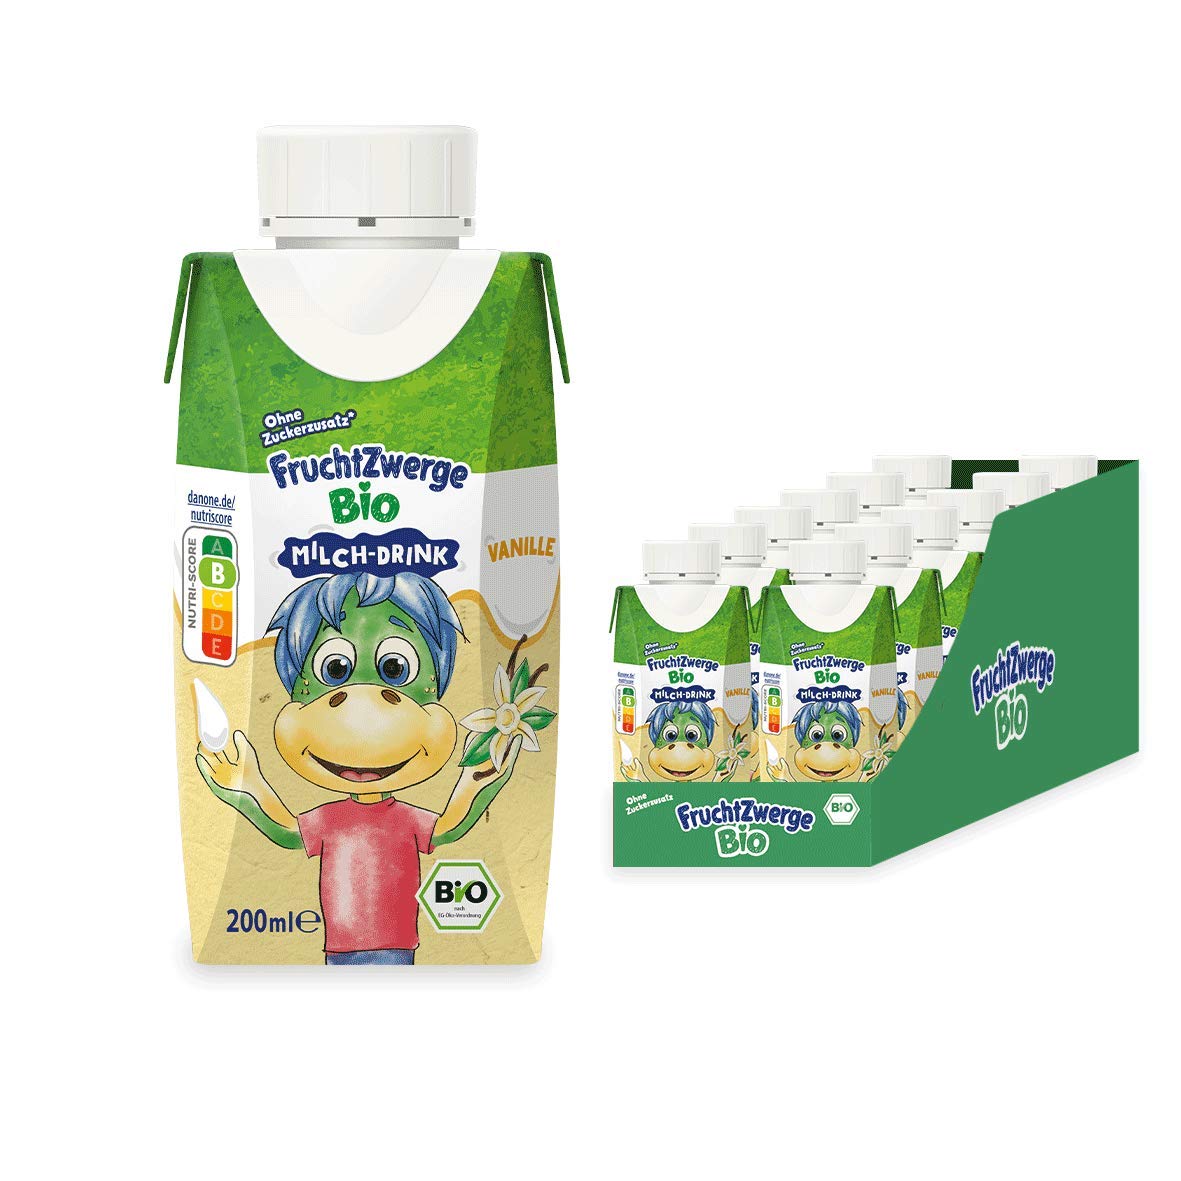 Fruchtzwerge Bio Milch-Drink Vanille, 12er Pack